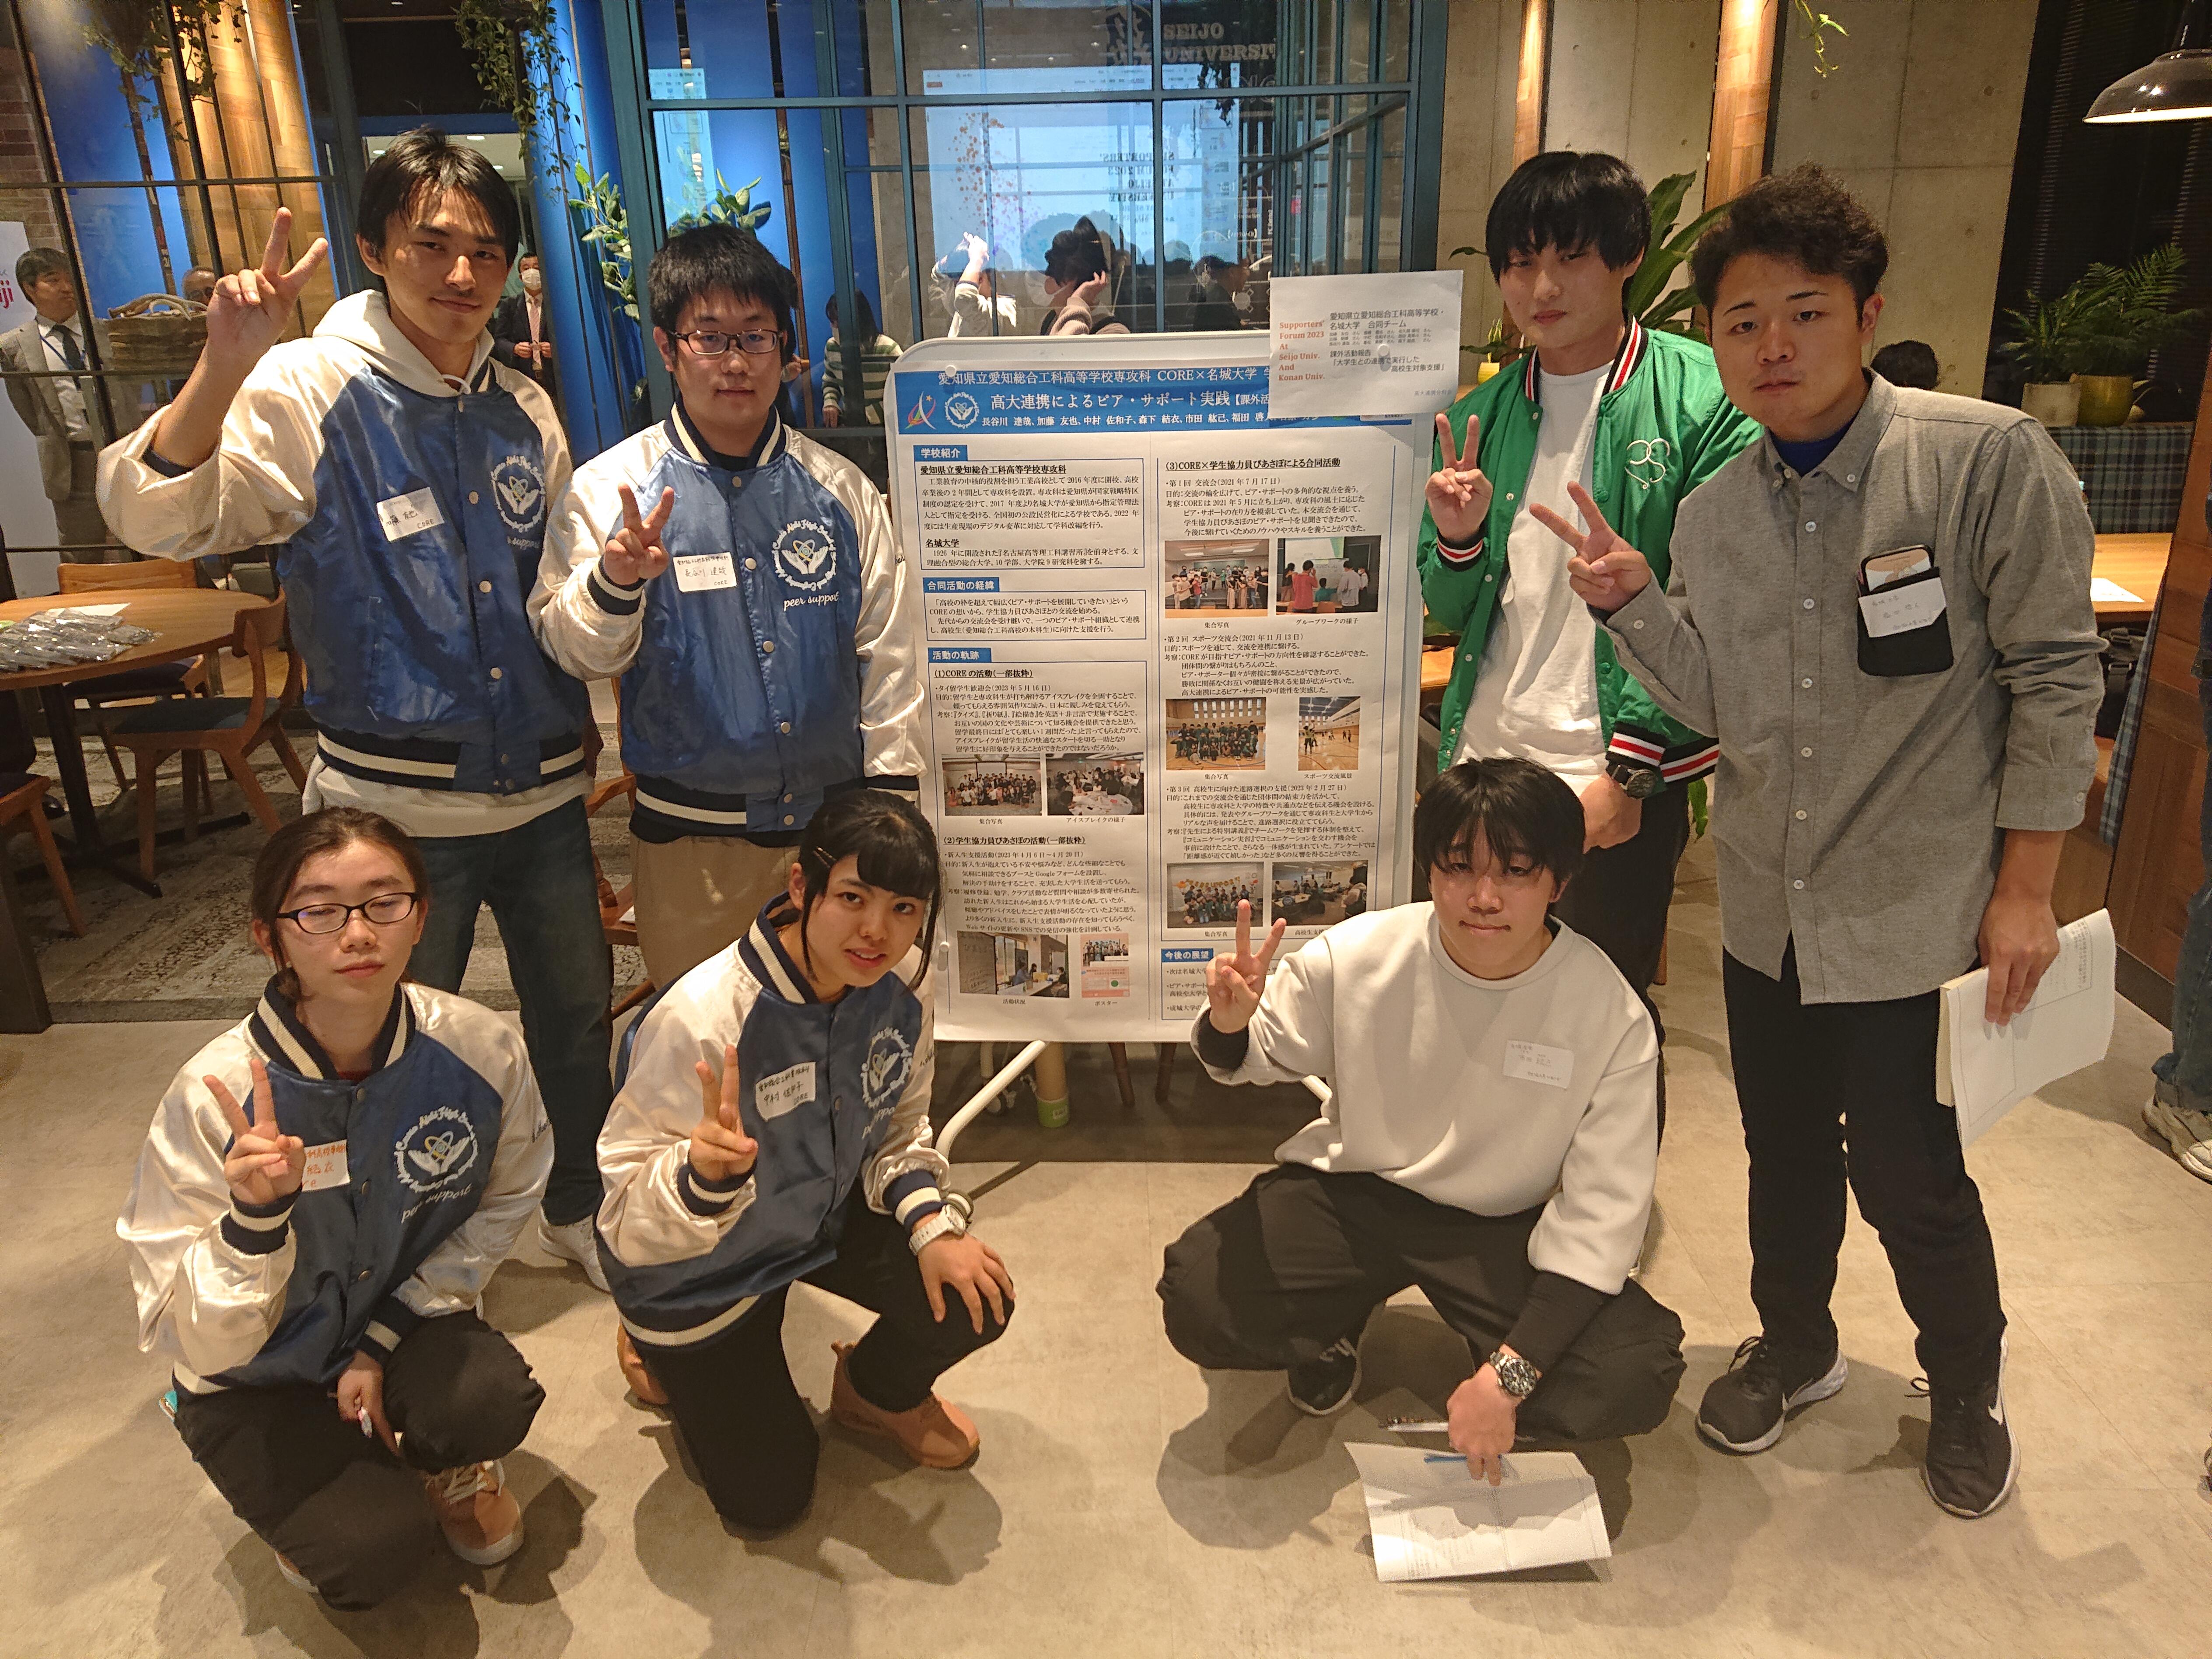 「名城大学×愛知総合工科高校専攻科」ピア・サポート２団体のこれまでの合同活動についてポスター発表